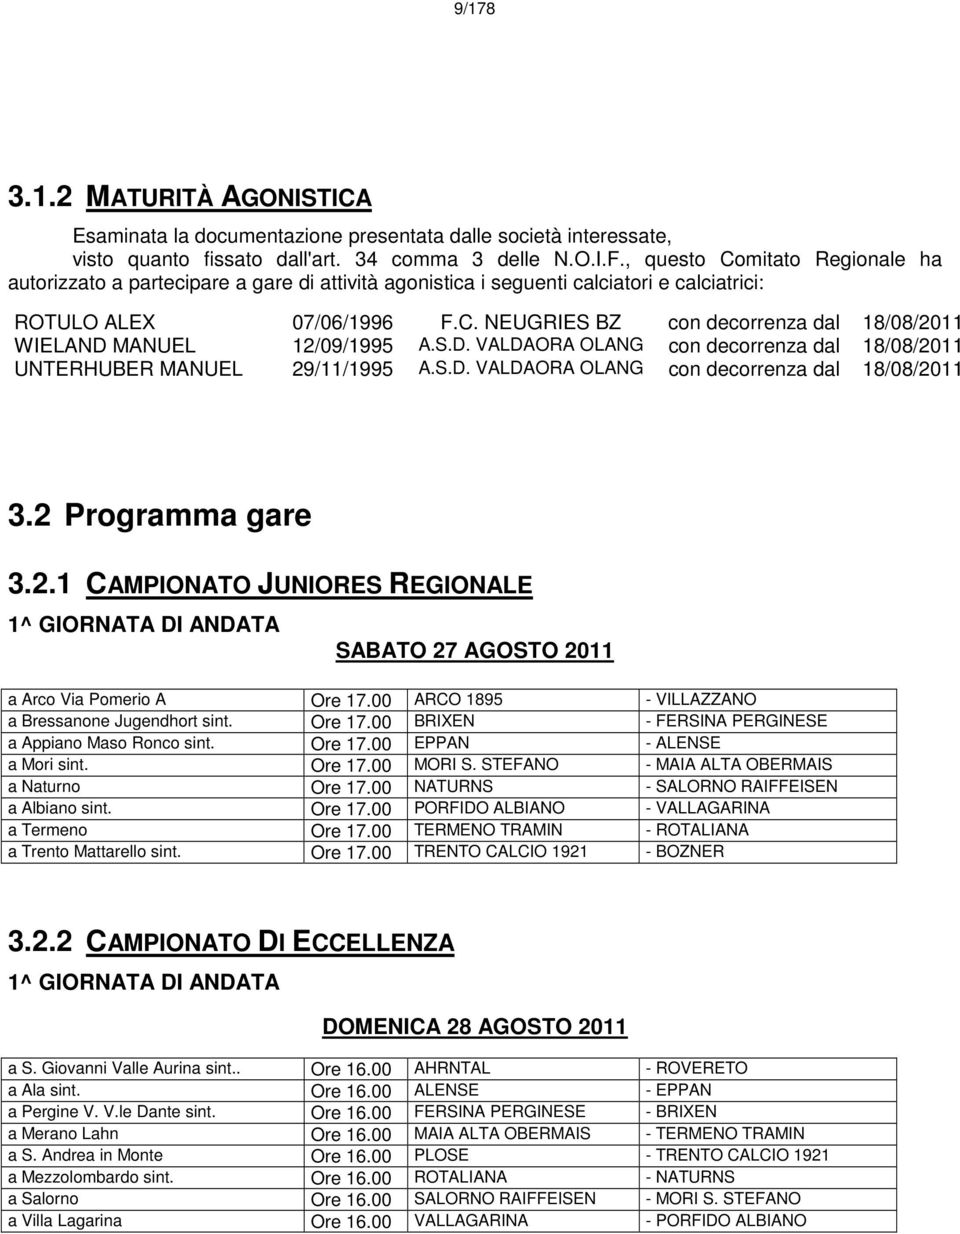 S.D. VALDAORA OLANG con decorrenza dal 18/08/2011 UNTERHUBER MANUEL 29/11/1995 A.S.D. VALDAORA OLANG con decorrenza dal 18/08/2011 3.2 Programma gare 3.2.1 CAMPIONATO JUNIORES REGIONALE 1^ GIORNATA DI ANDATA SABATO 27 AGOSTO 2011 a Arco Via Pomerio A Ore 17.